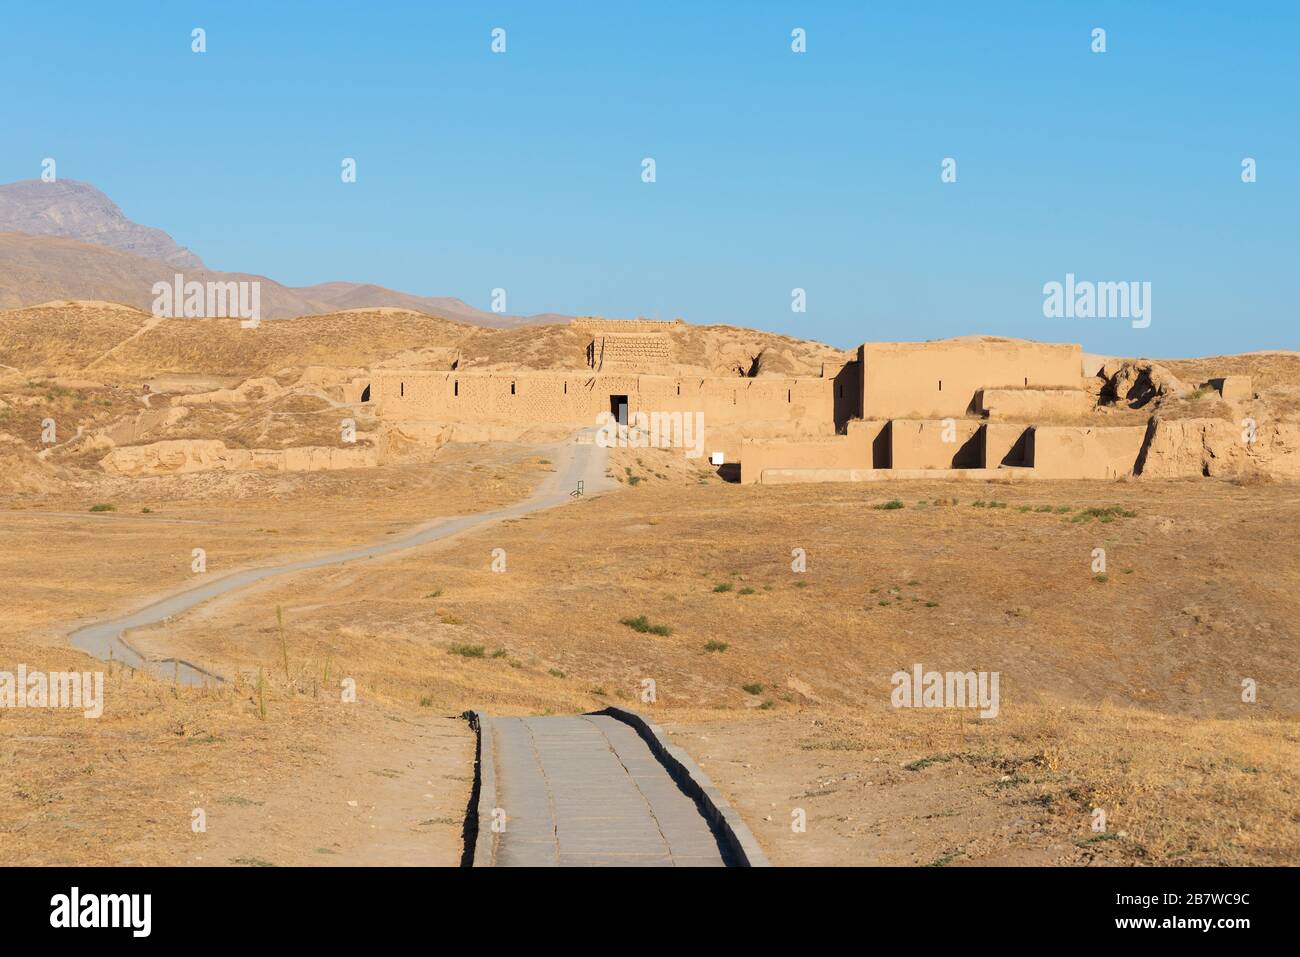 Langer Weg zur archäologischen Stätte von Nisa (Nicäa), die auch als alte Hauptstadt von Parthaunisa im parthischen Reich bekannt ist. Bagir Village, Turkmenistan Stockfoto